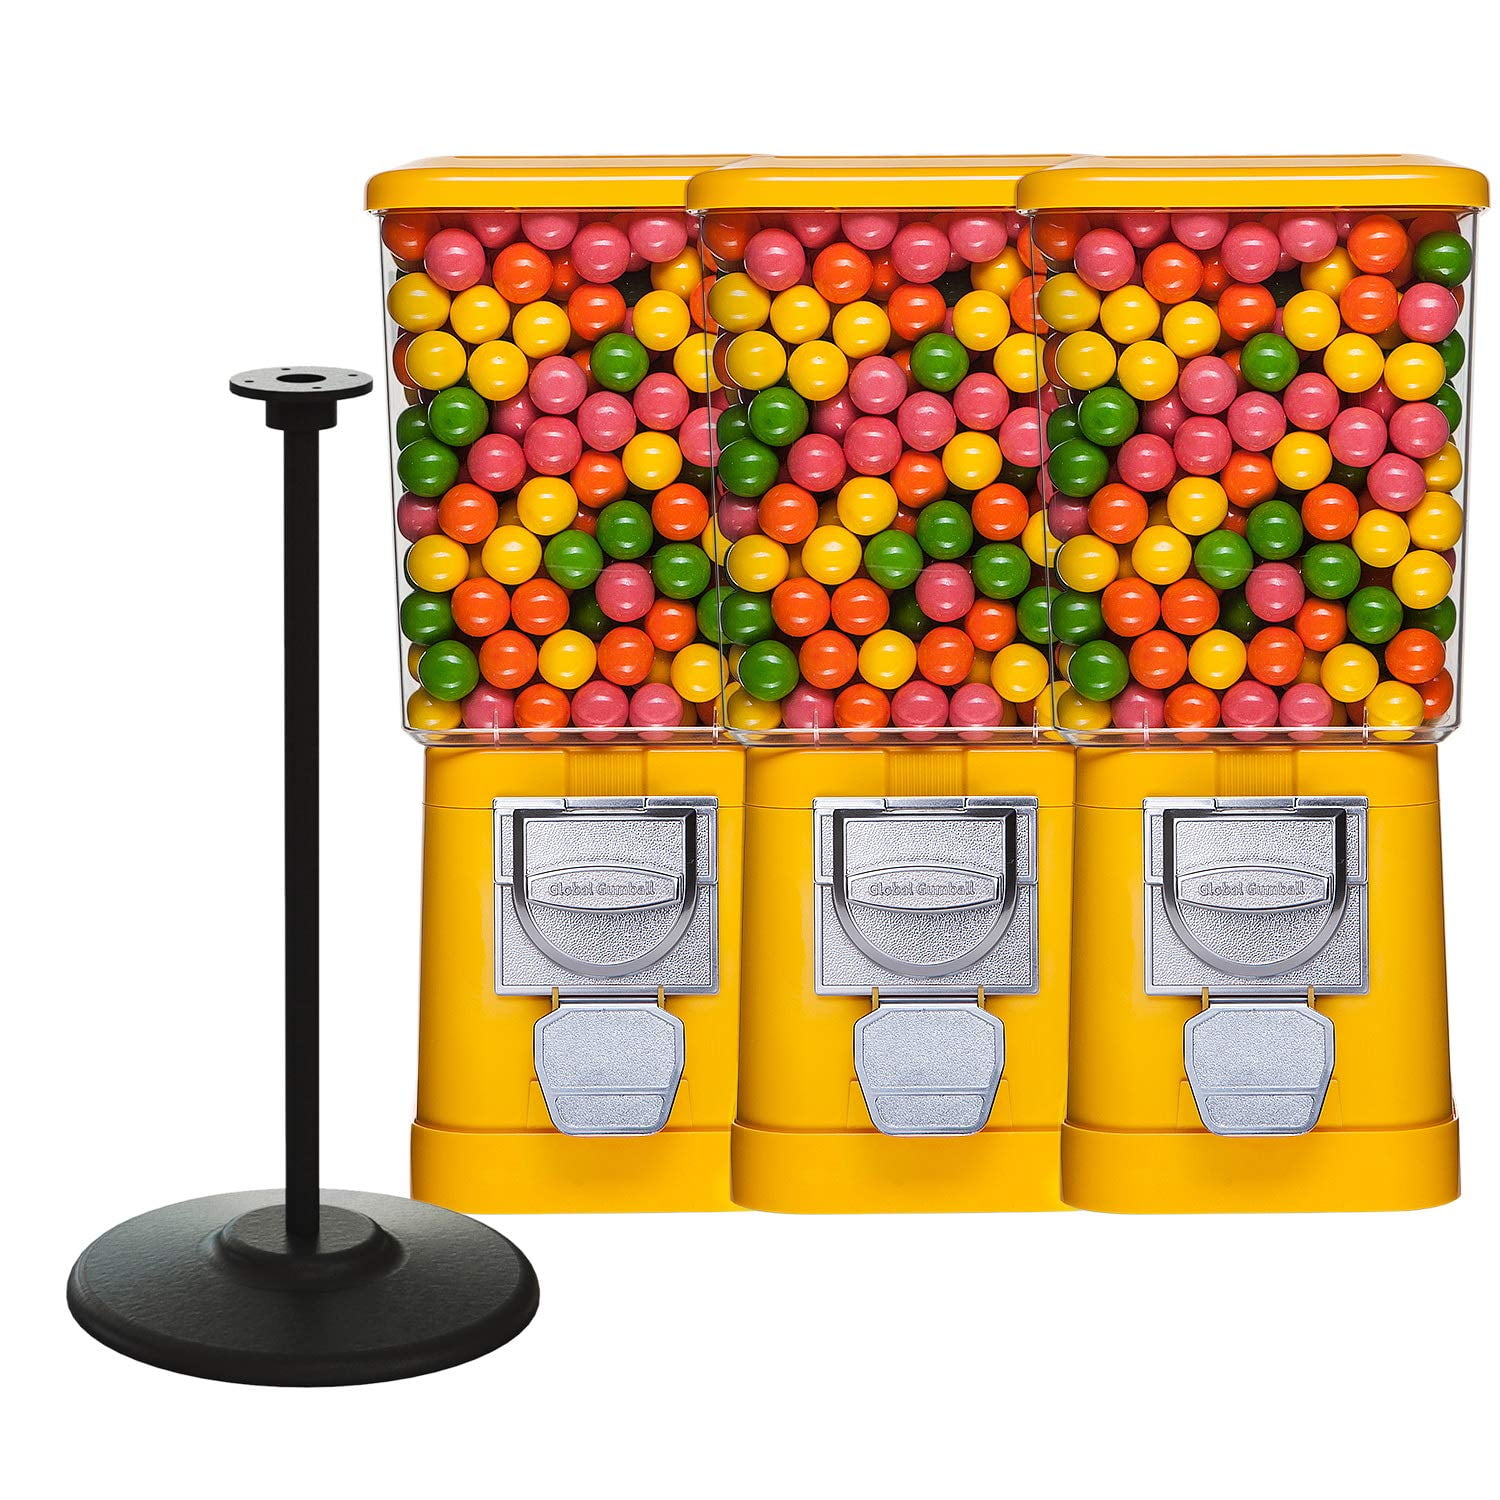 BARGAIN Northwestern Super 60 A&A Gumball Candy Gum Peanut Toy Vending Machine 